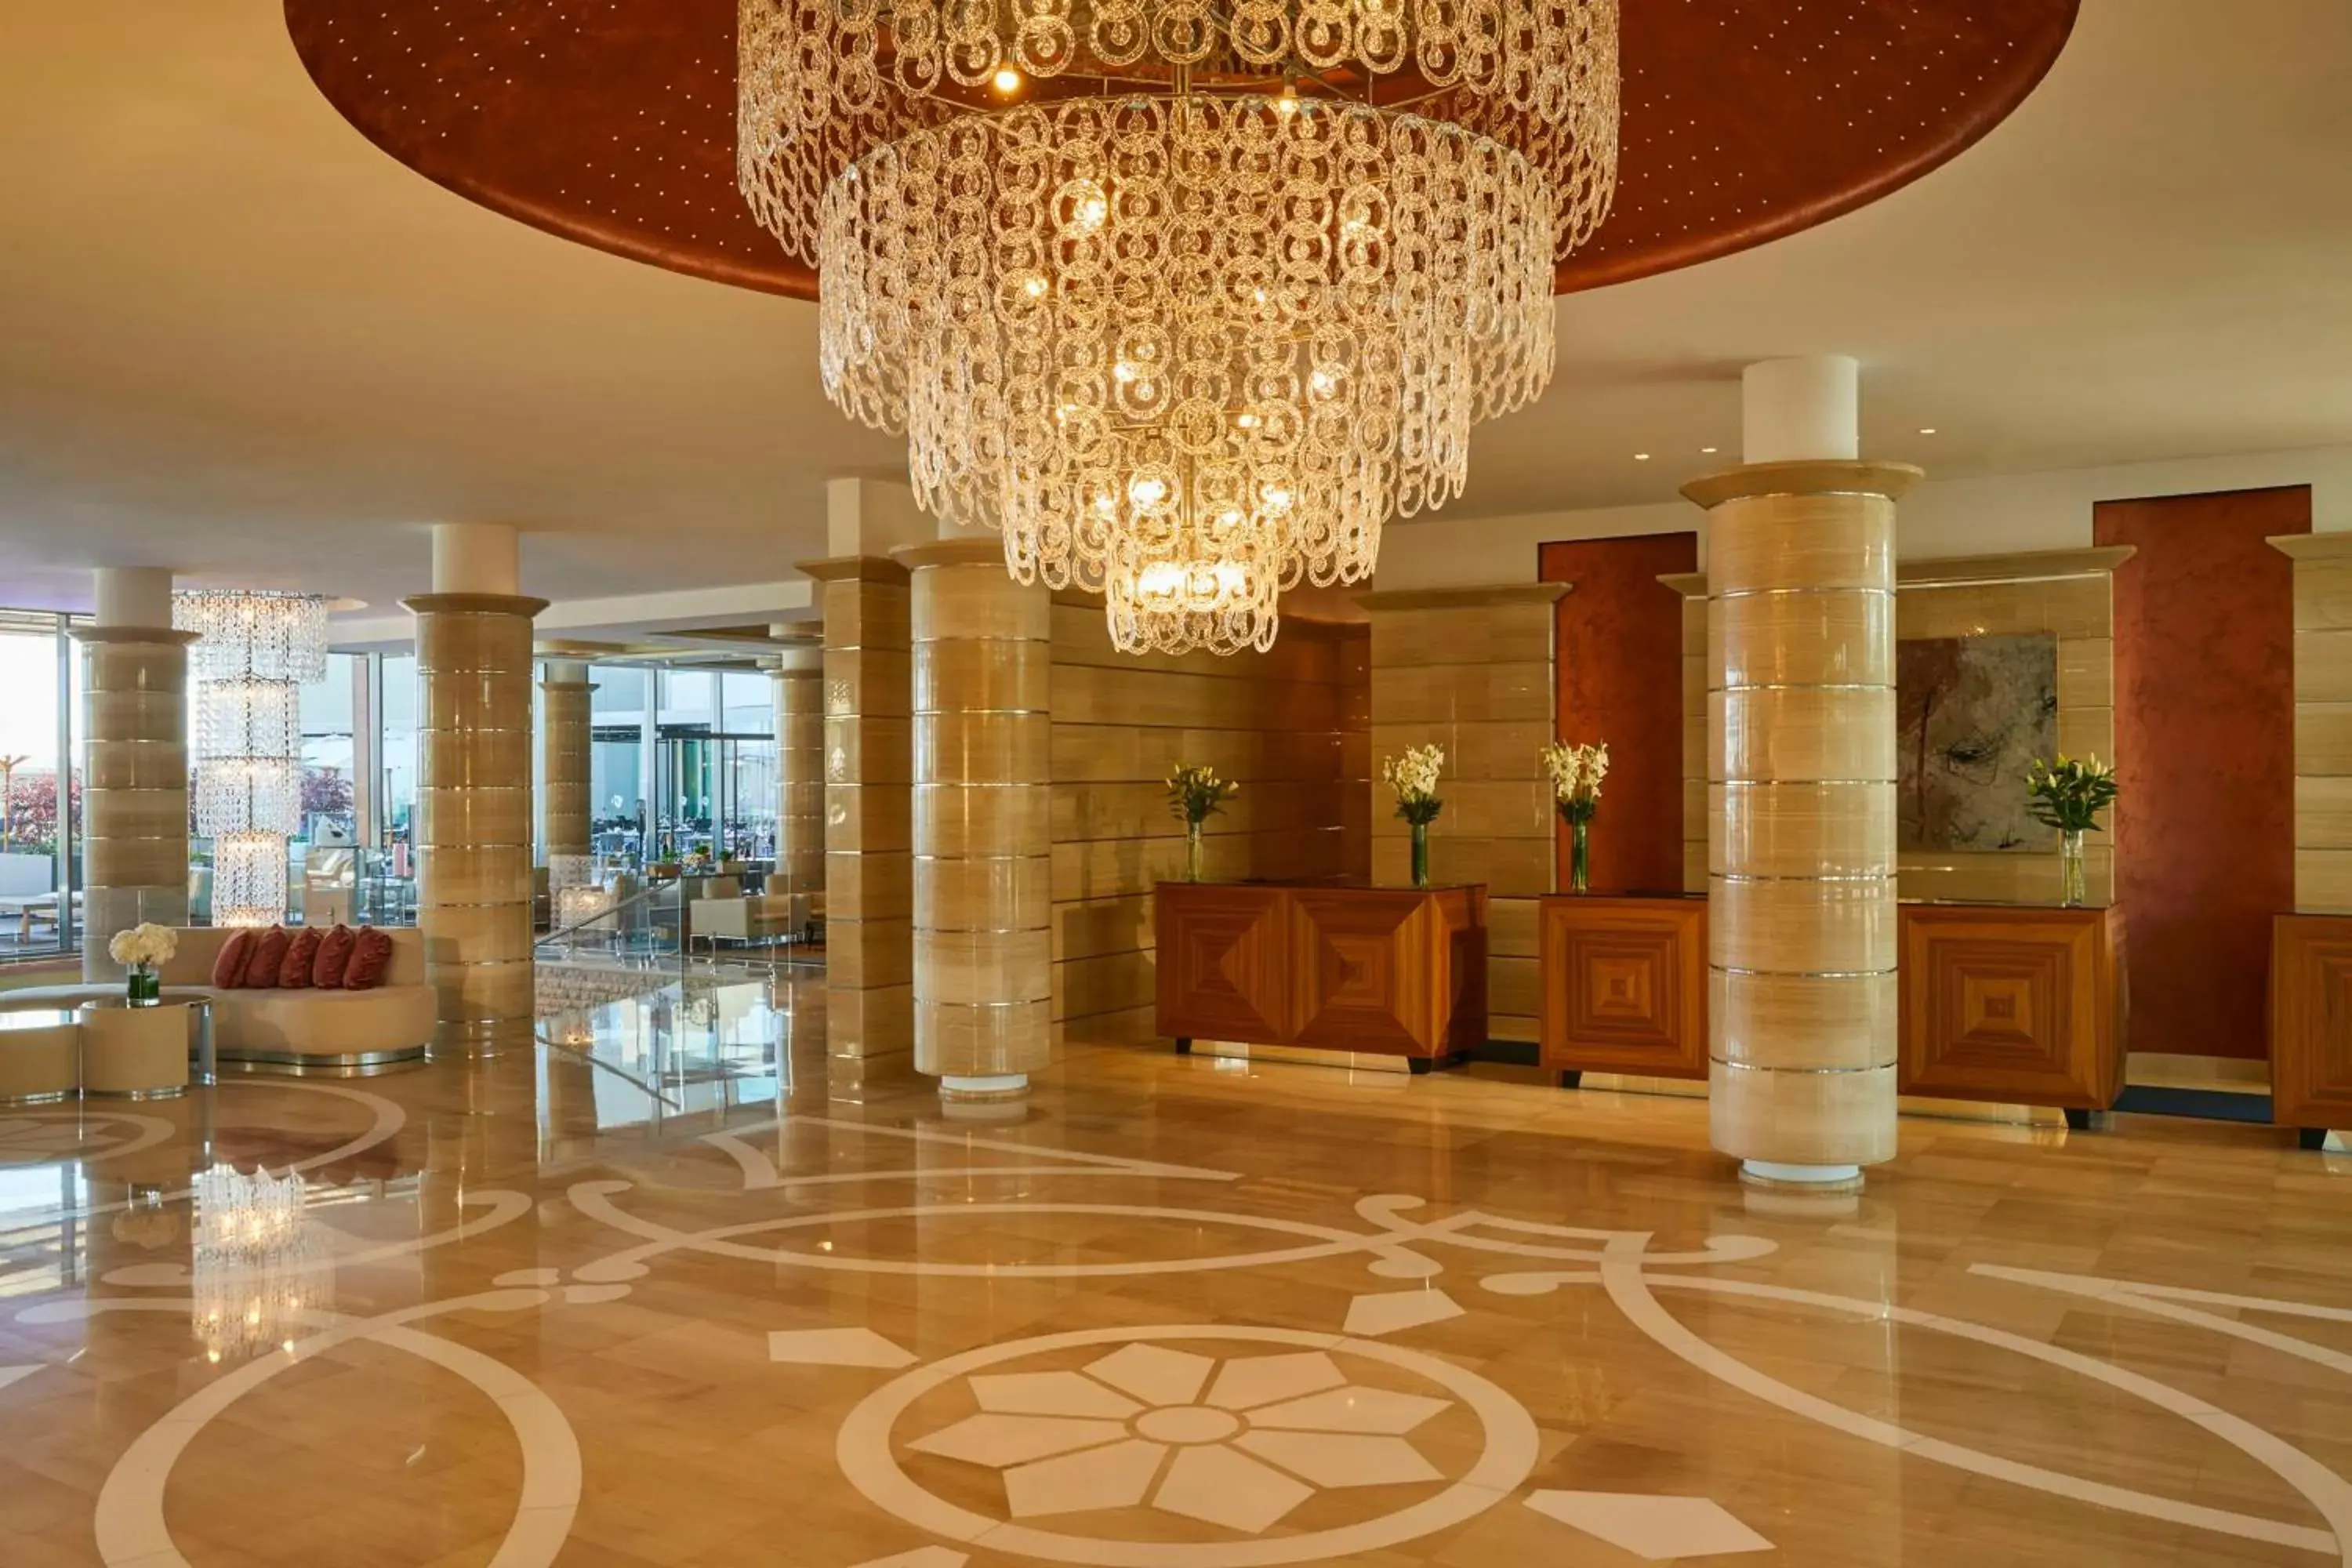 Lobby or reception, Lobby/Reception in Kempinski Hotel Adriatic Istria Croatia